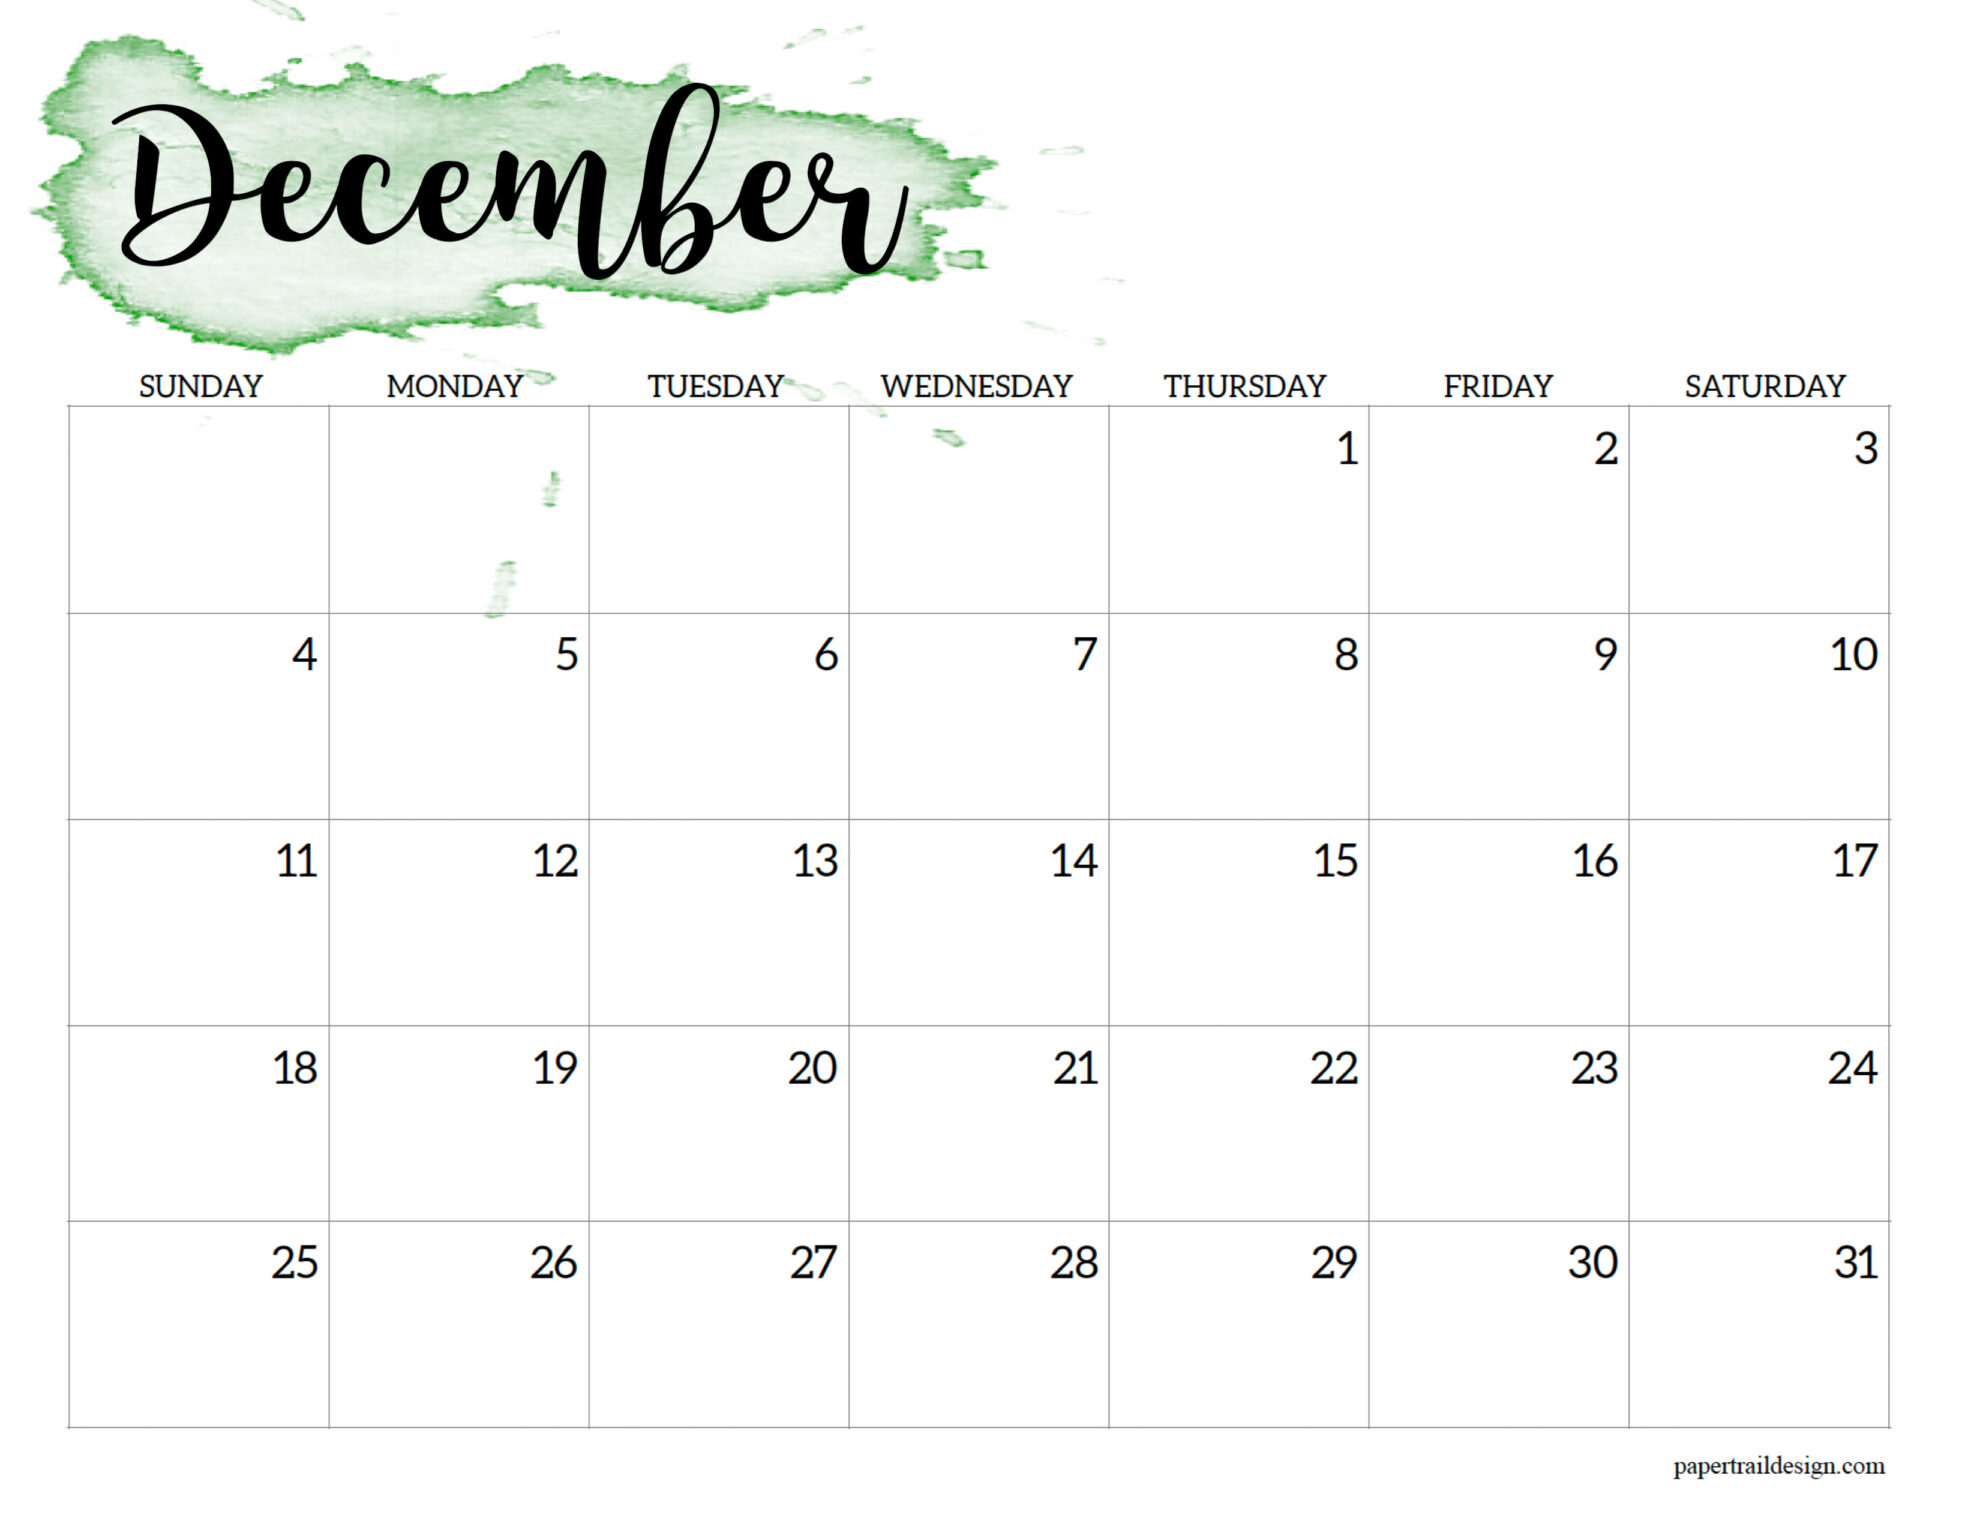 December 2022 Calendar Printable Free 2022 Calendar Printable - Watercolor - Paper Trail Design